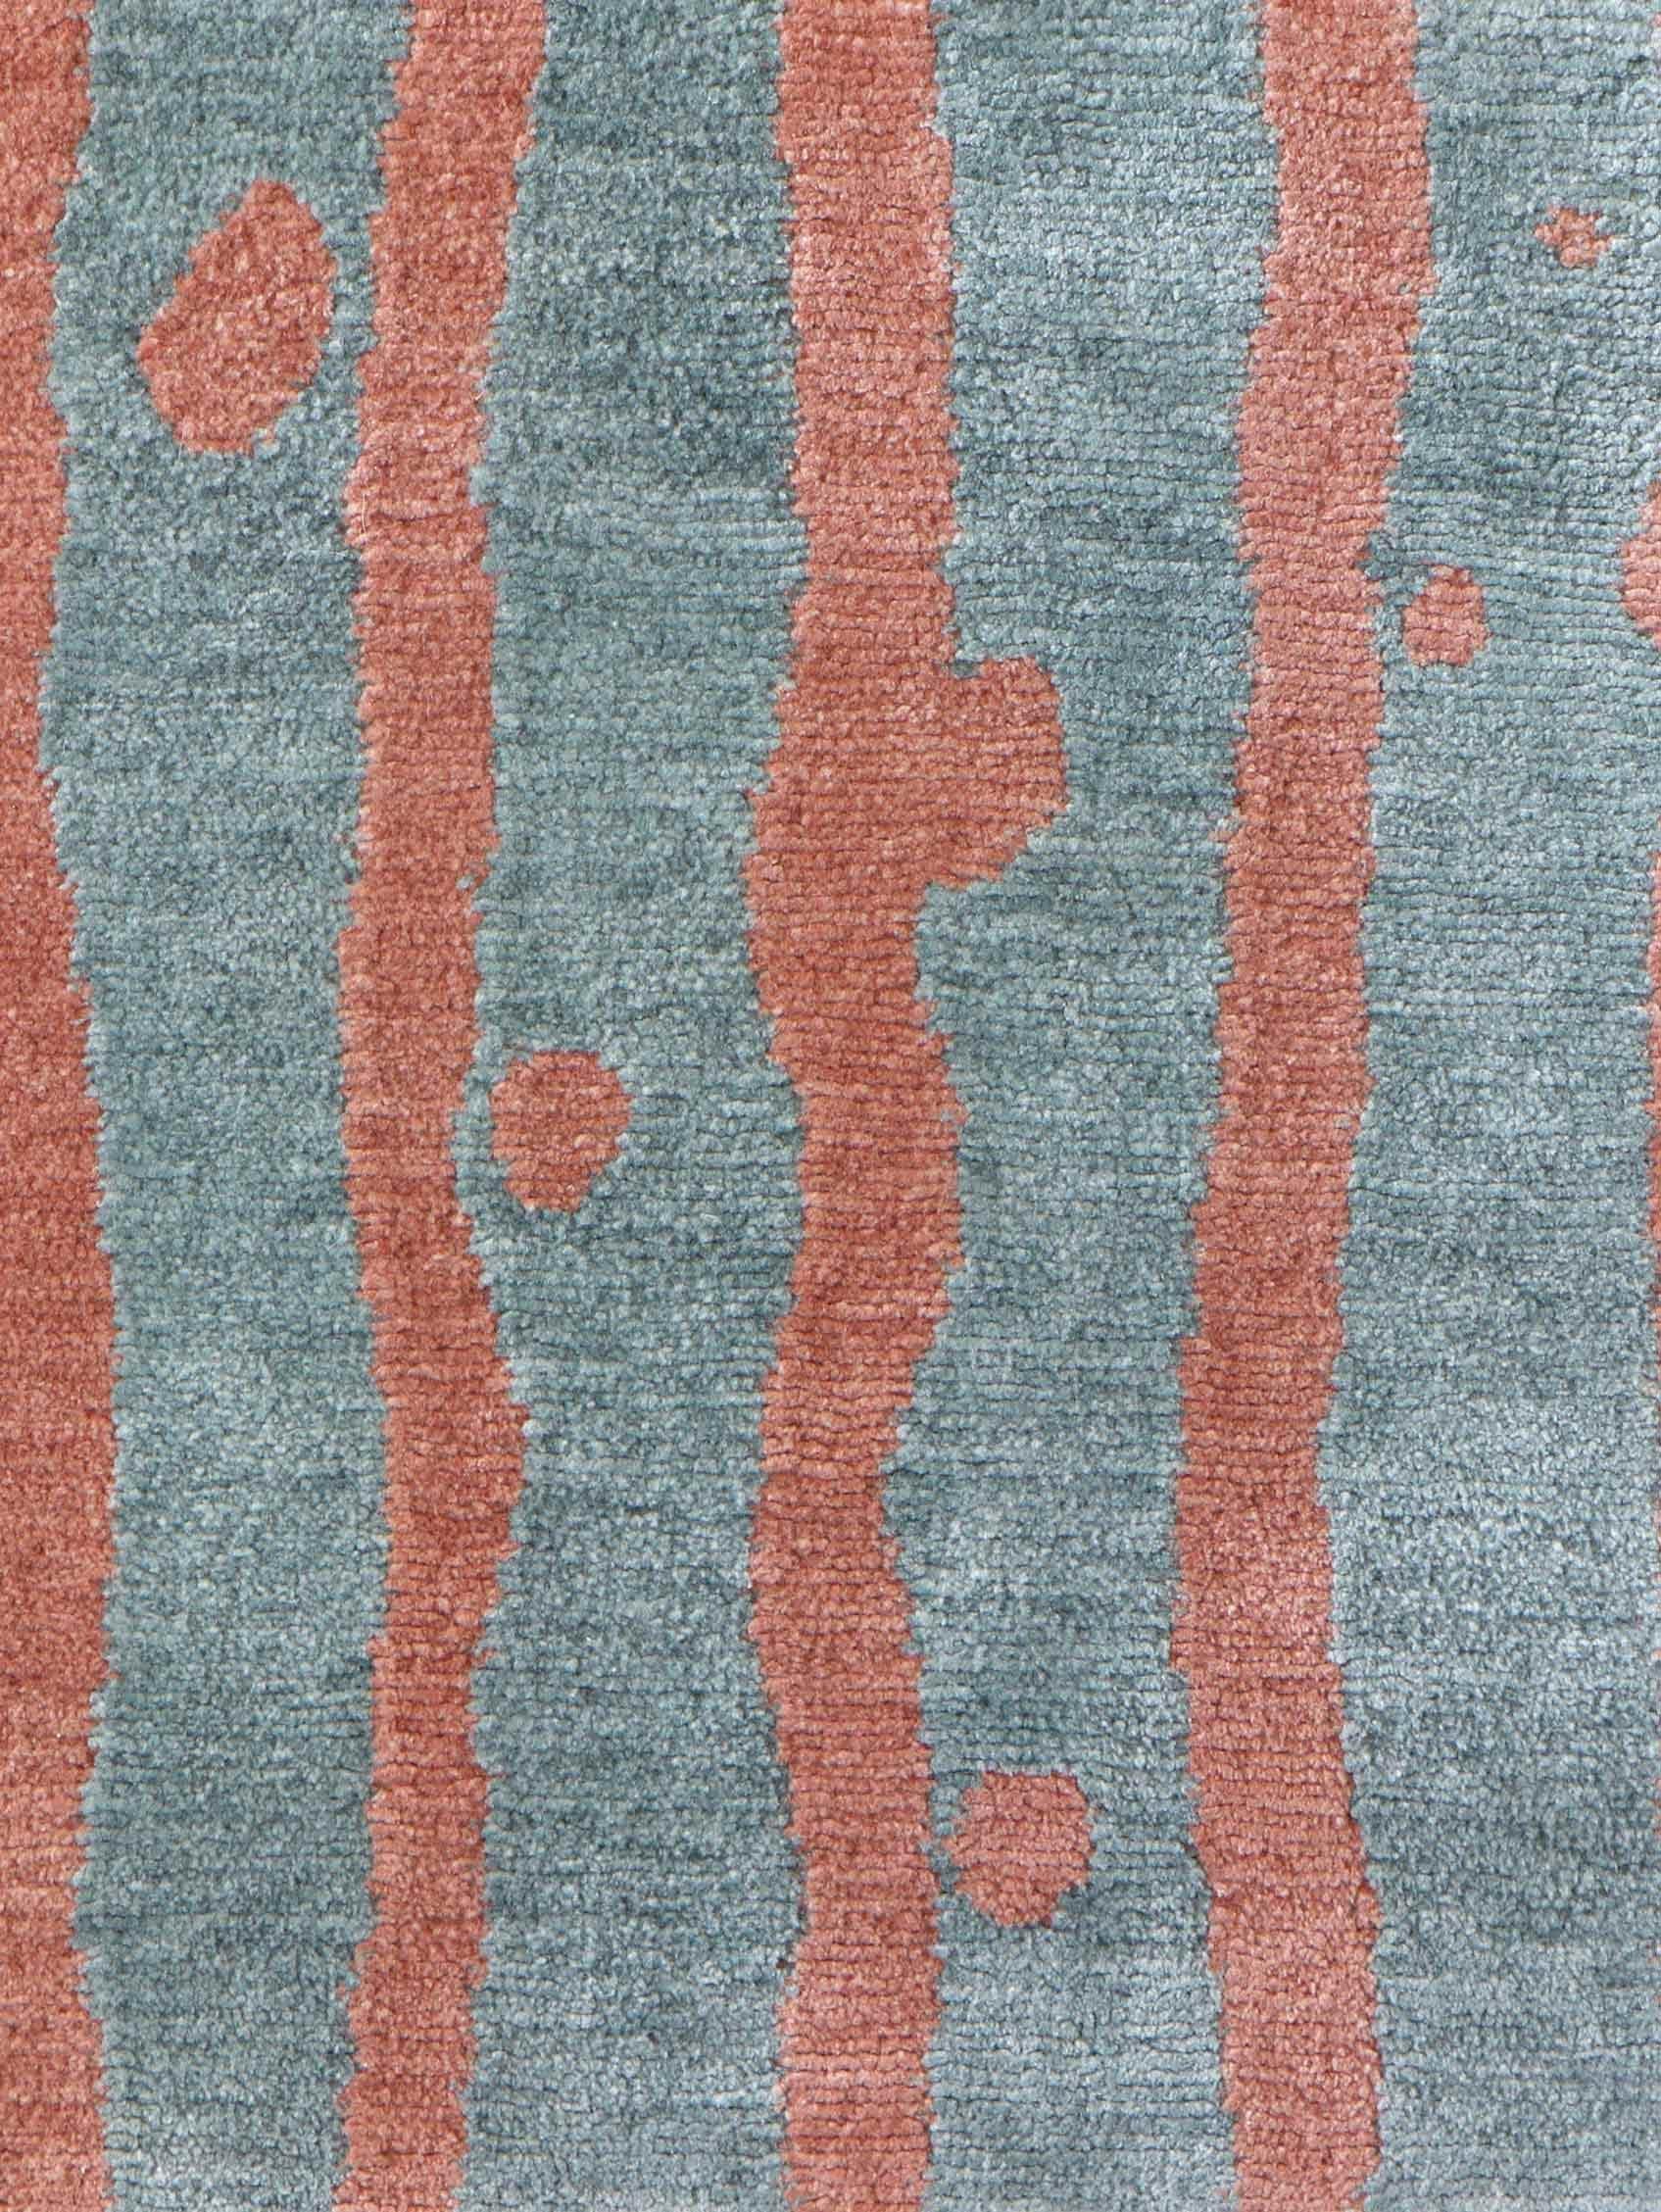 Motif du tapis : Drippy Stripe - Morea
MATERIAL : 100% laine mérinos
Qualité : Tissage croisé tibétain, tissé à la main 
Taille : 8'-0